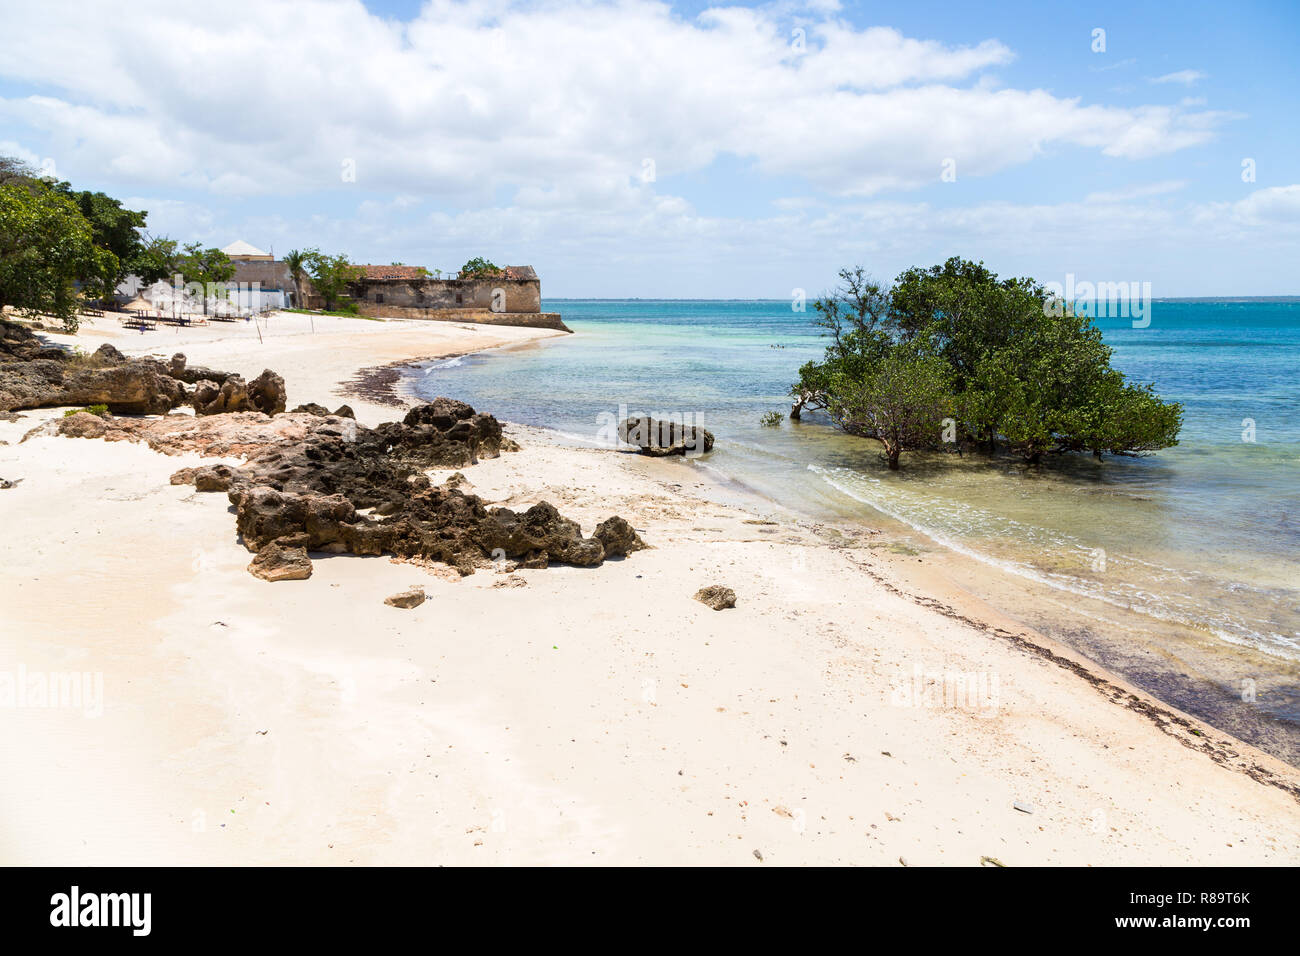 Vuoto alla spiaggia di sabbia di isola di Mozambico (Ilha de Mocambique), mangrovie e resti di una casa coloniale, Oceano Indiano. Nampula. Il portoghese in Africa orientale. Foto Stock